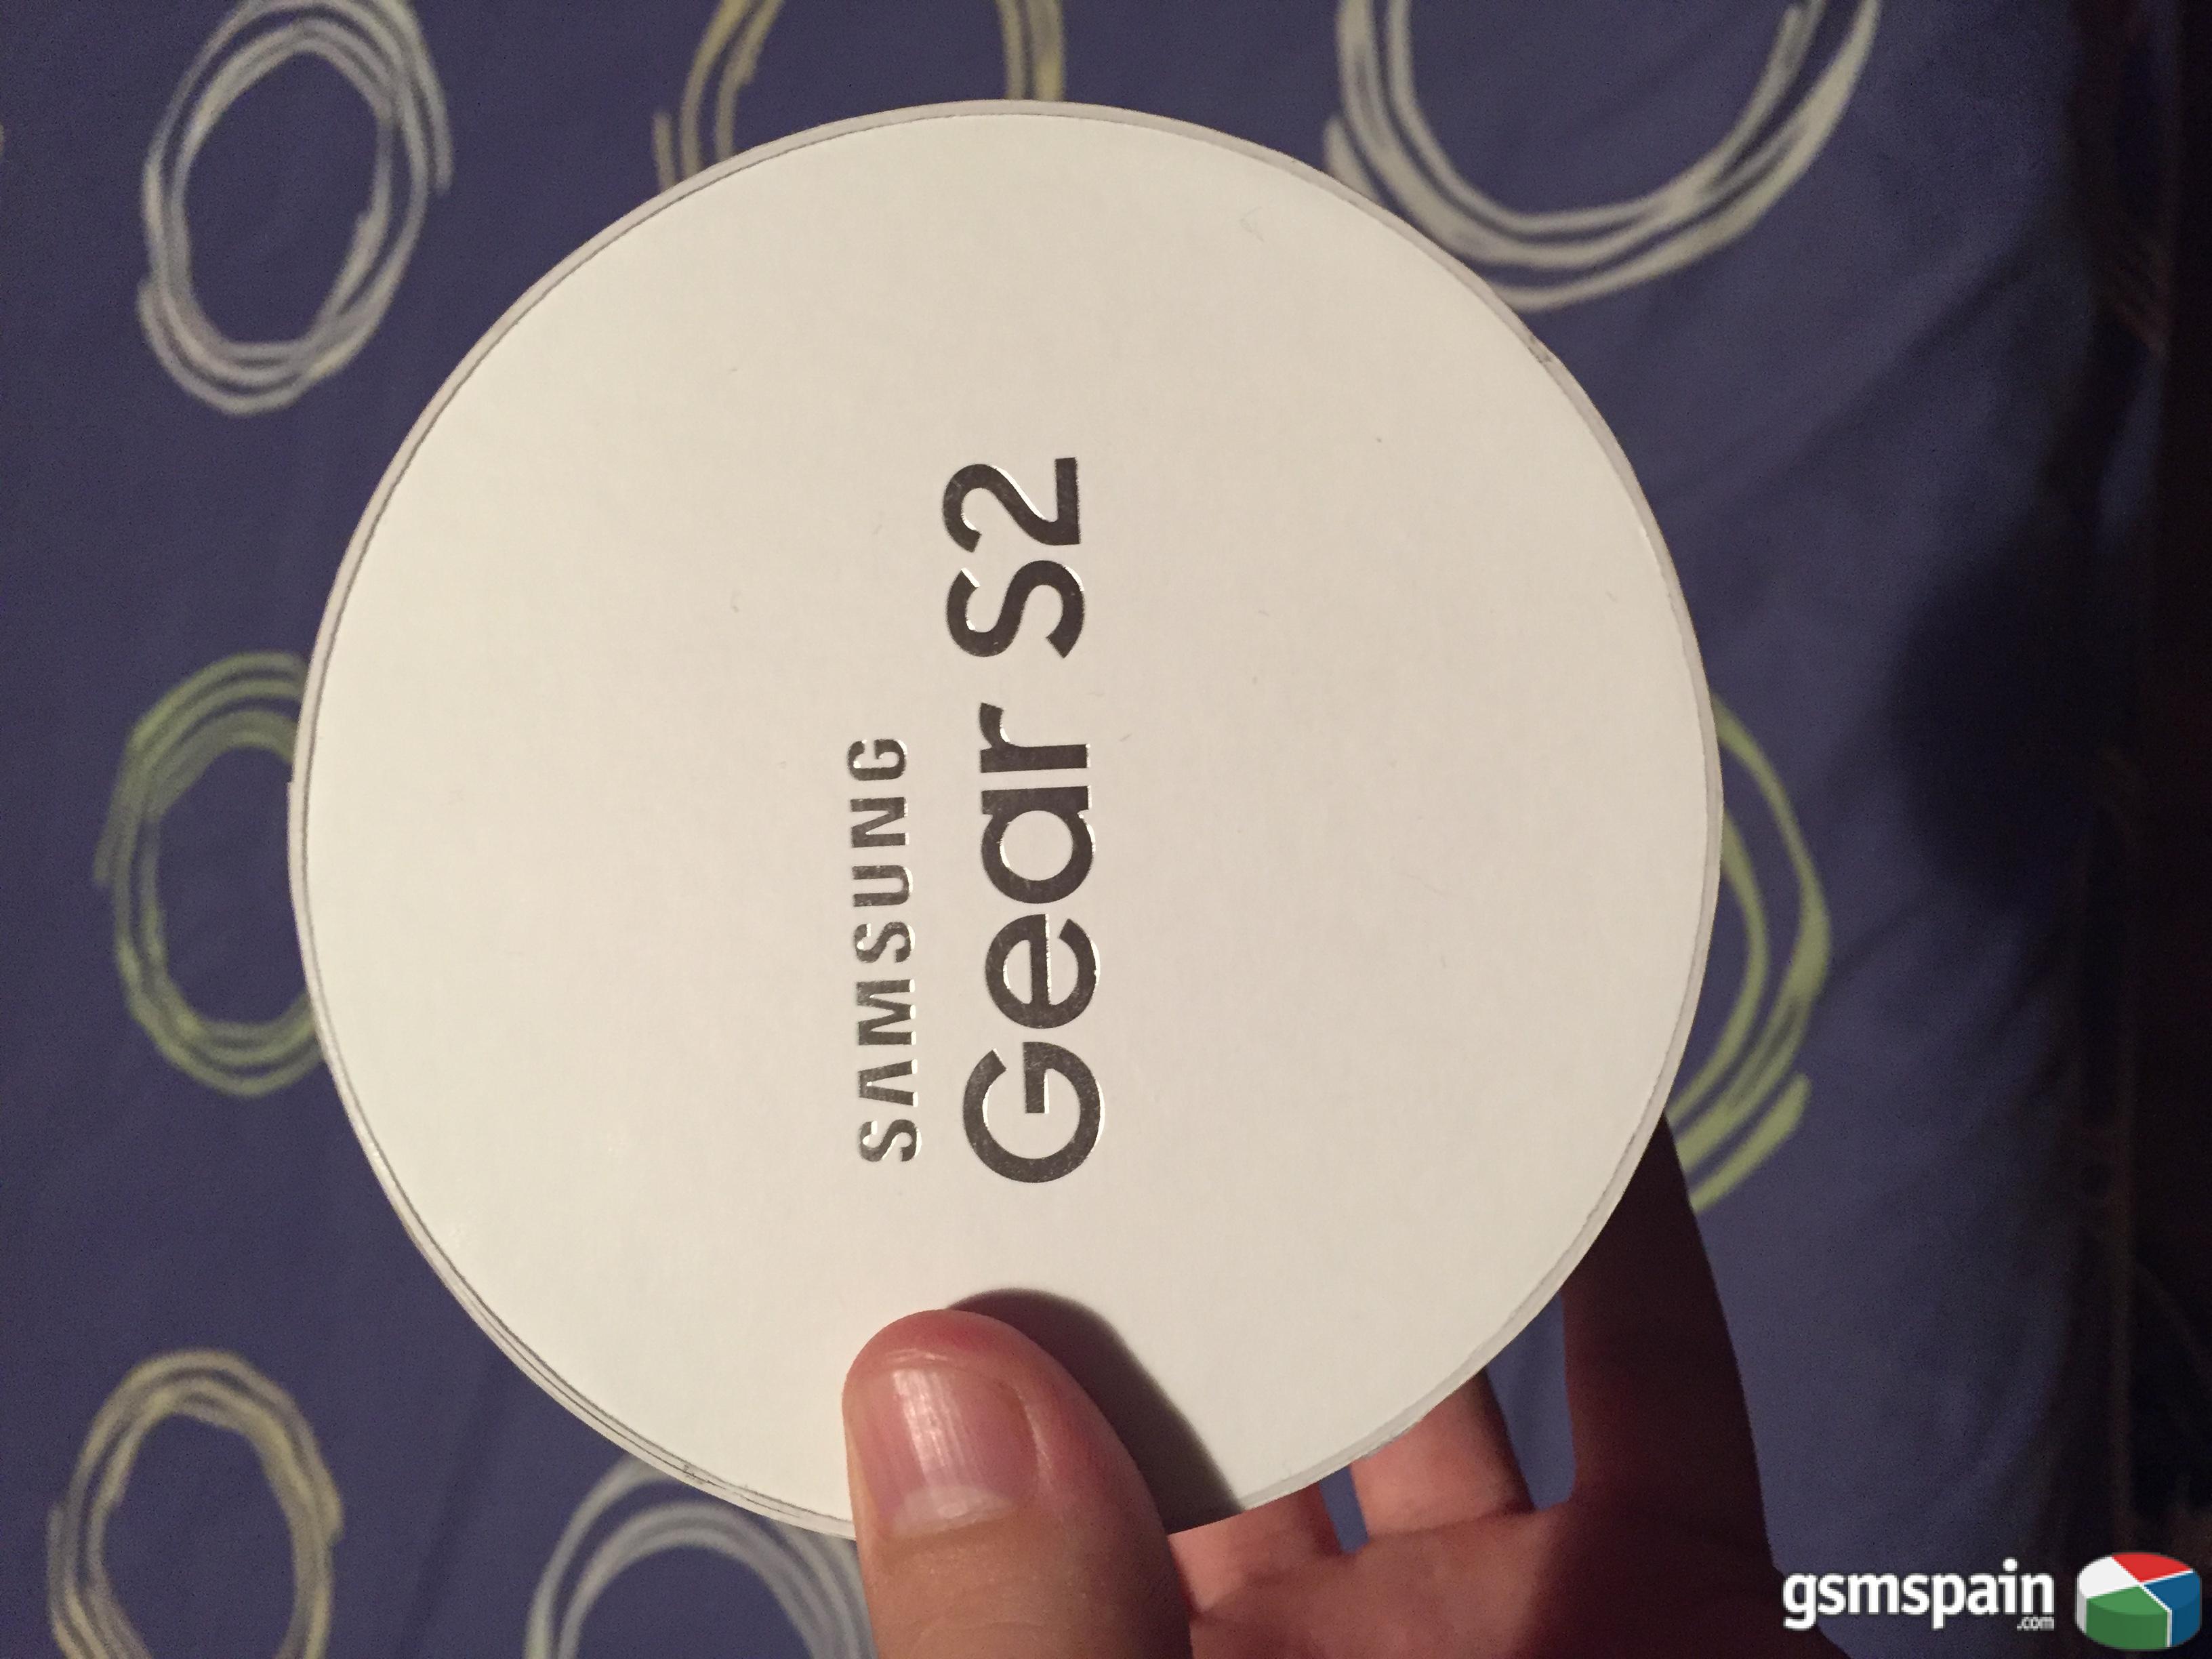 [VENDO] Samsung Gear S2 precintado.